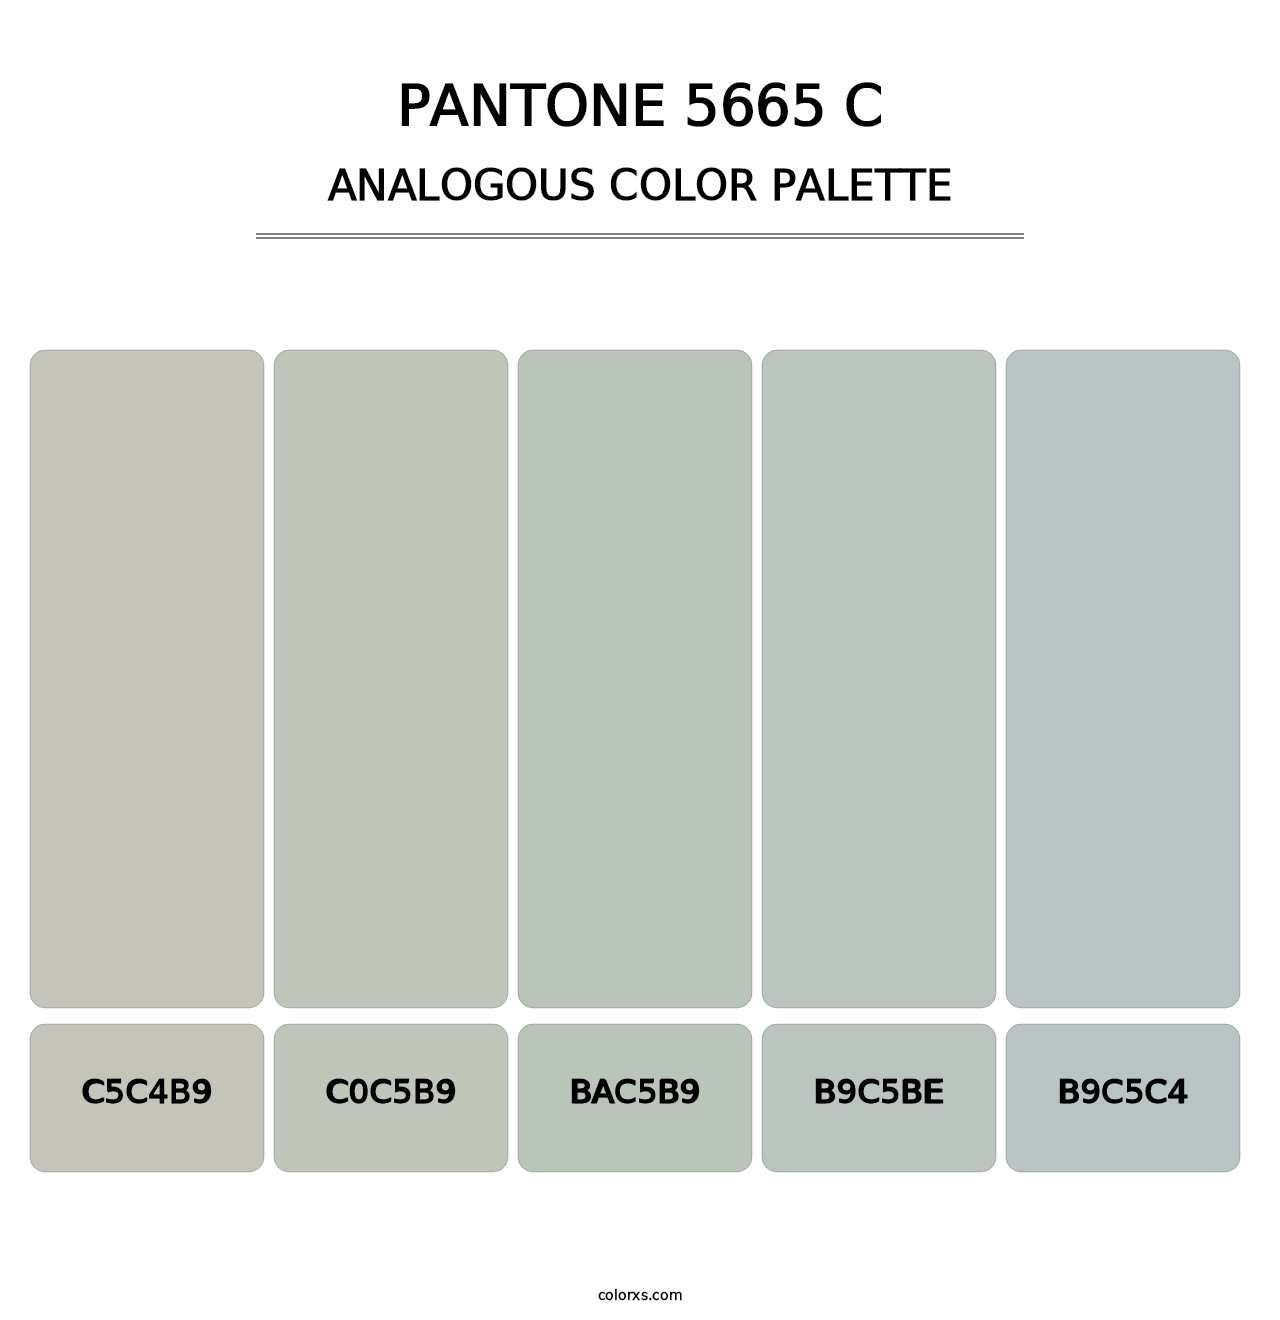 PANTONE 5665 C - Analogous Color Palette